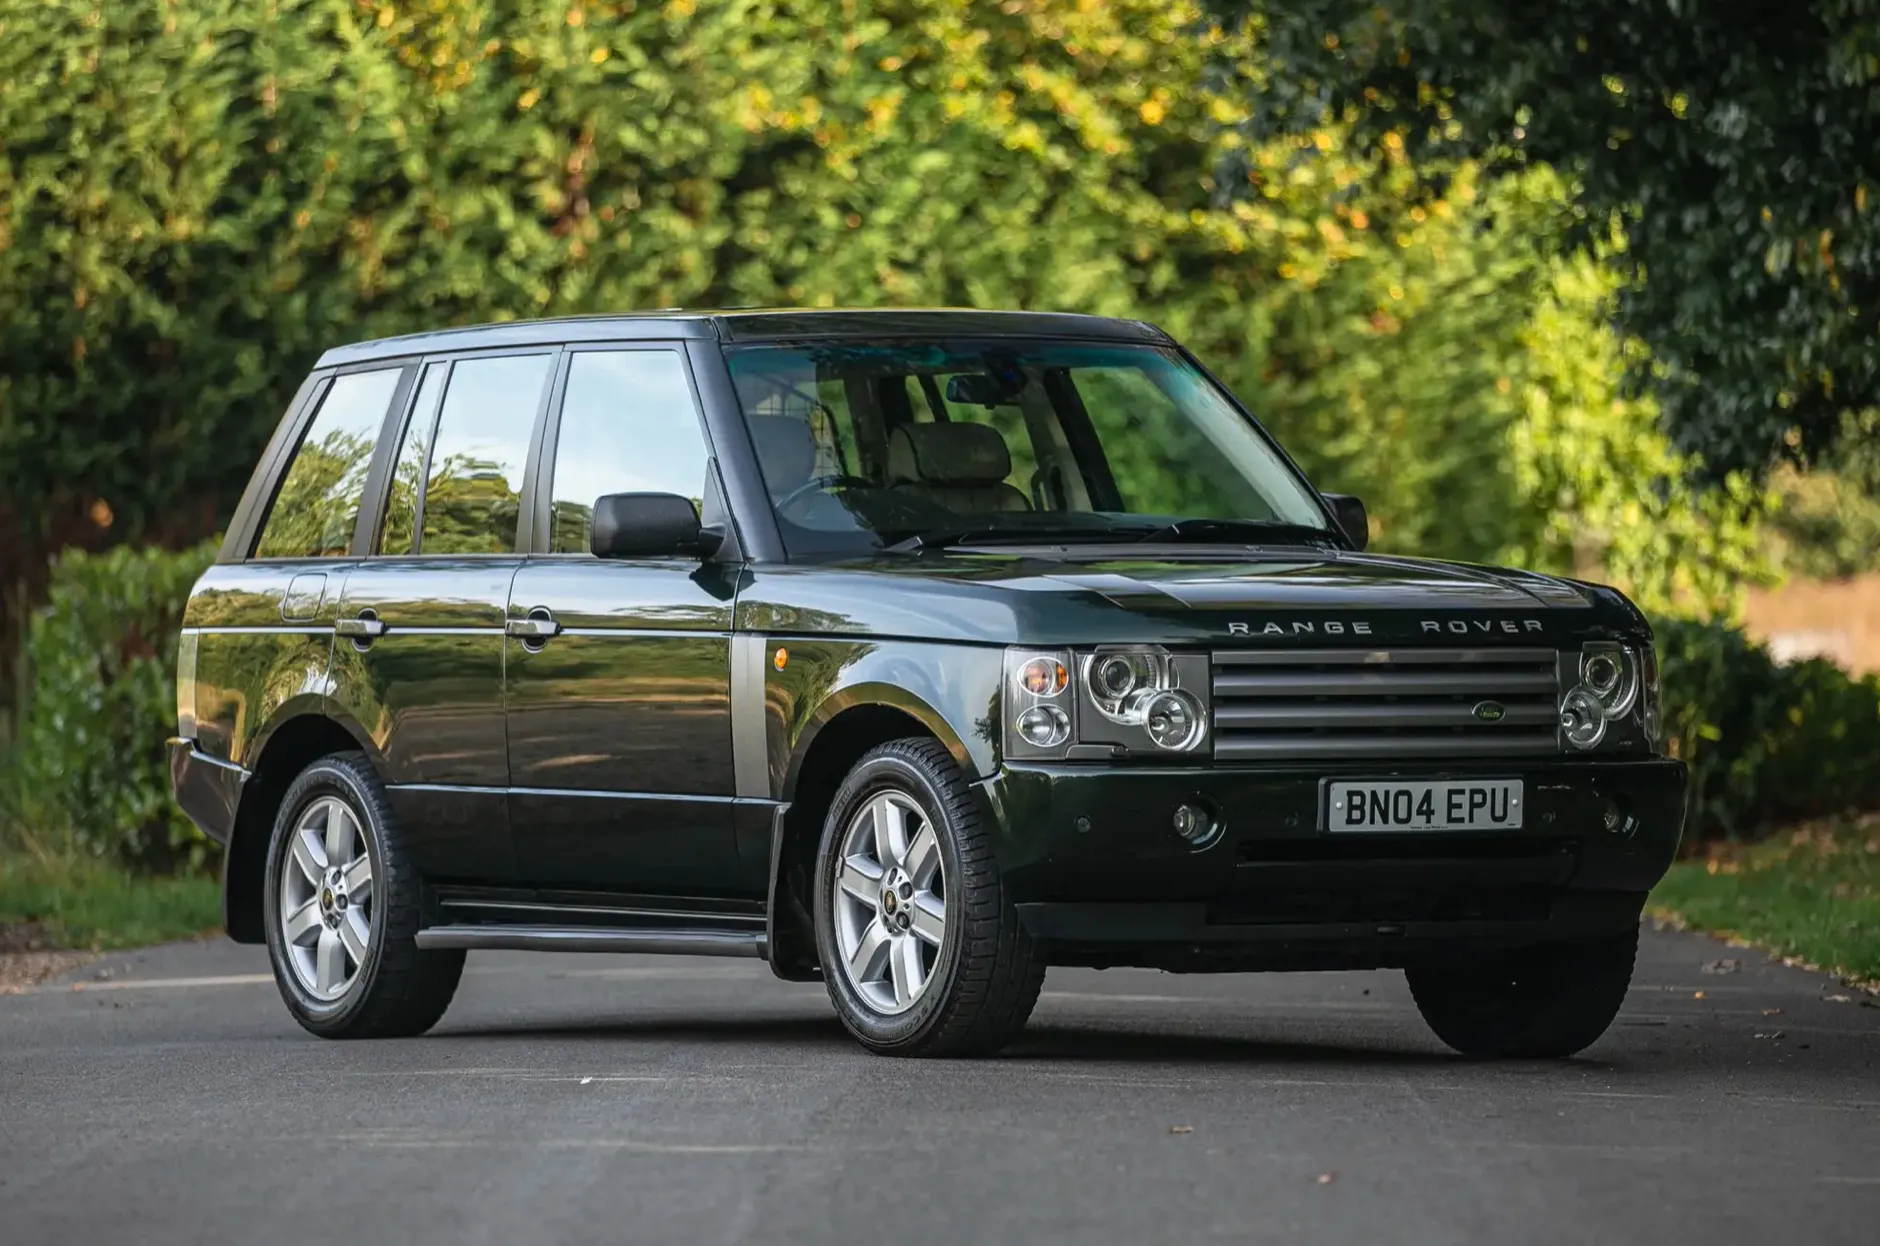 De Range Rover uit 2004 van koningin Elizabeth wordt geveild